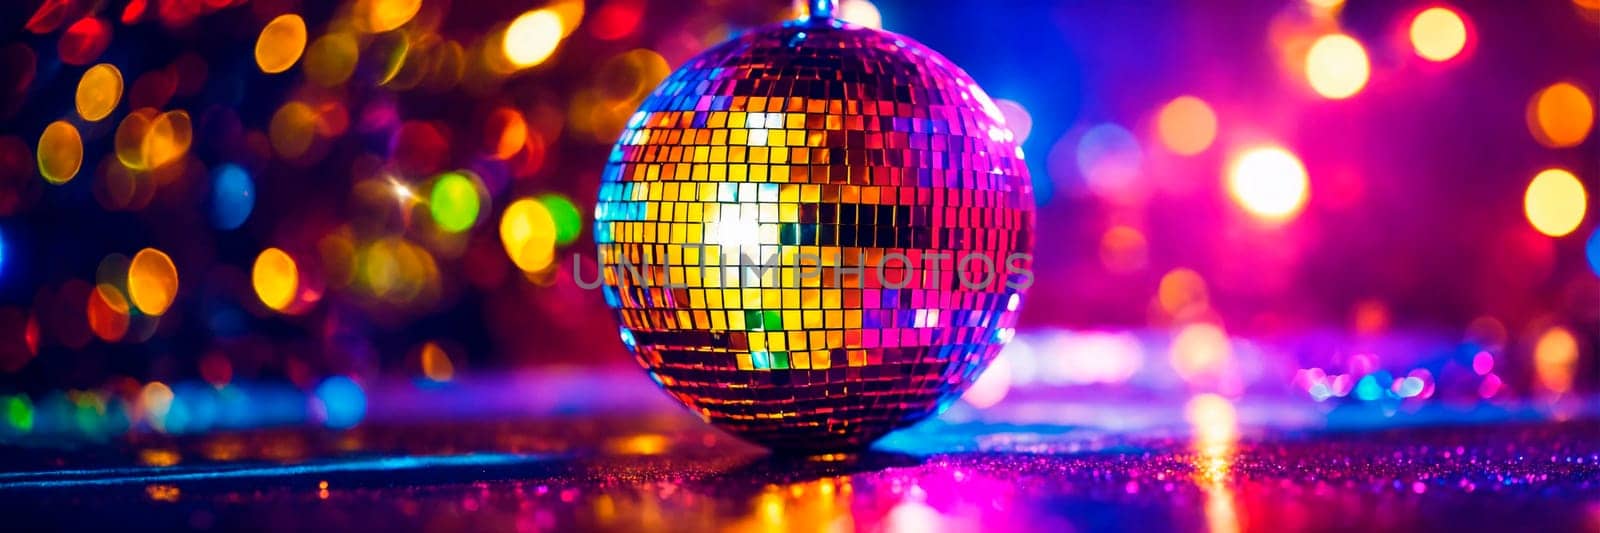 shining shiny disco ball. Selective focus. by yanadjana